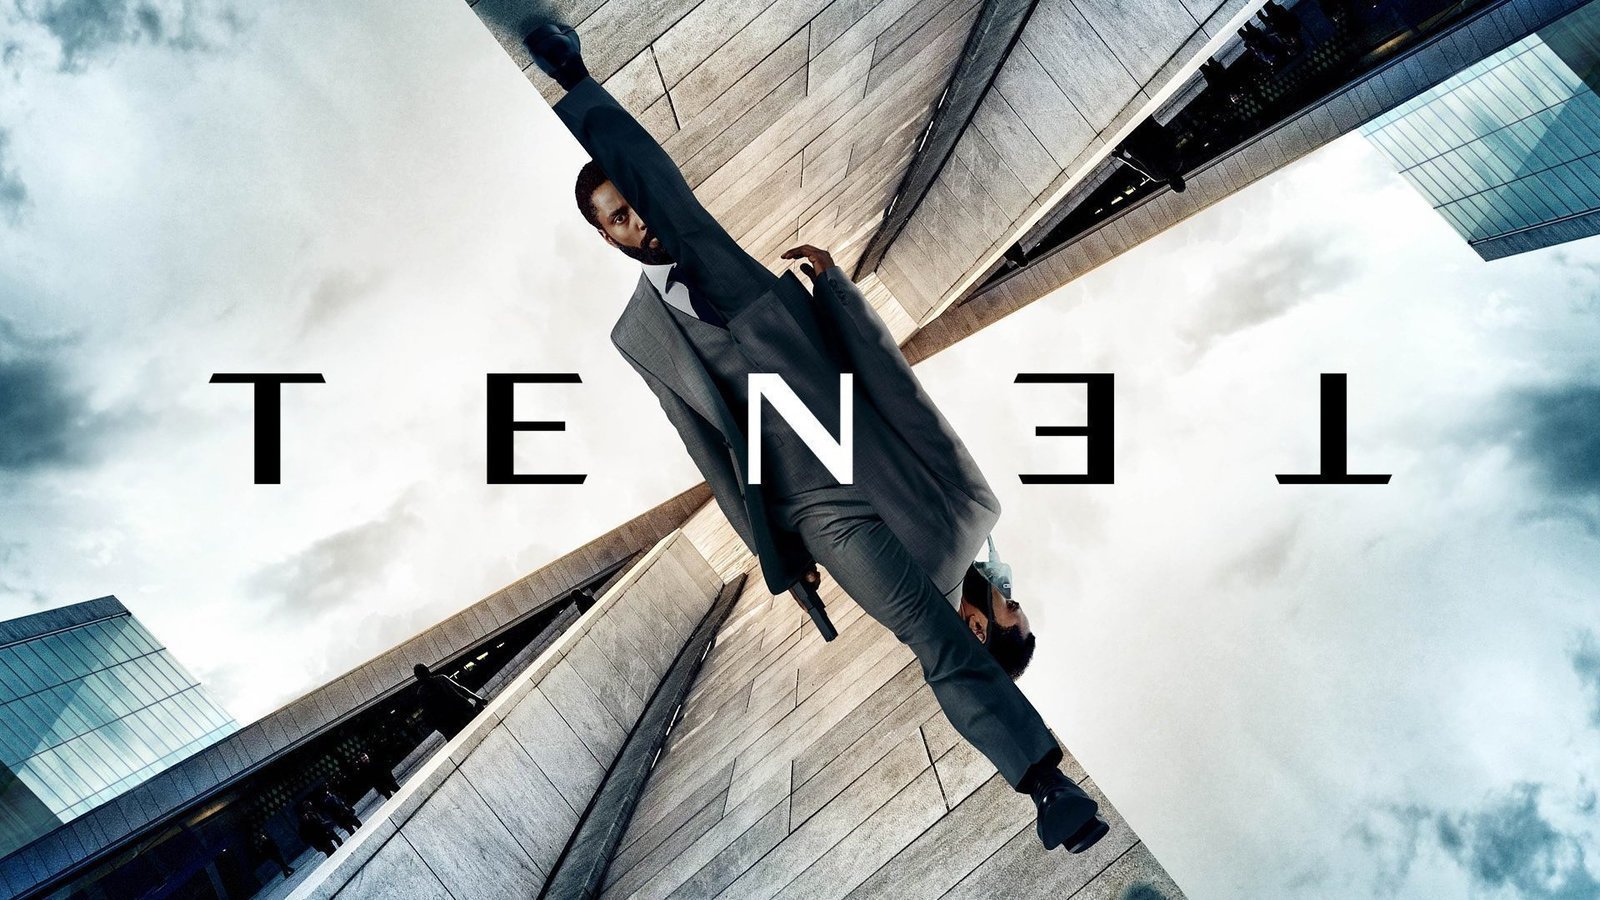 Christopher Nolan Tenet Movie Postpones Its World Premiere Indefinitely